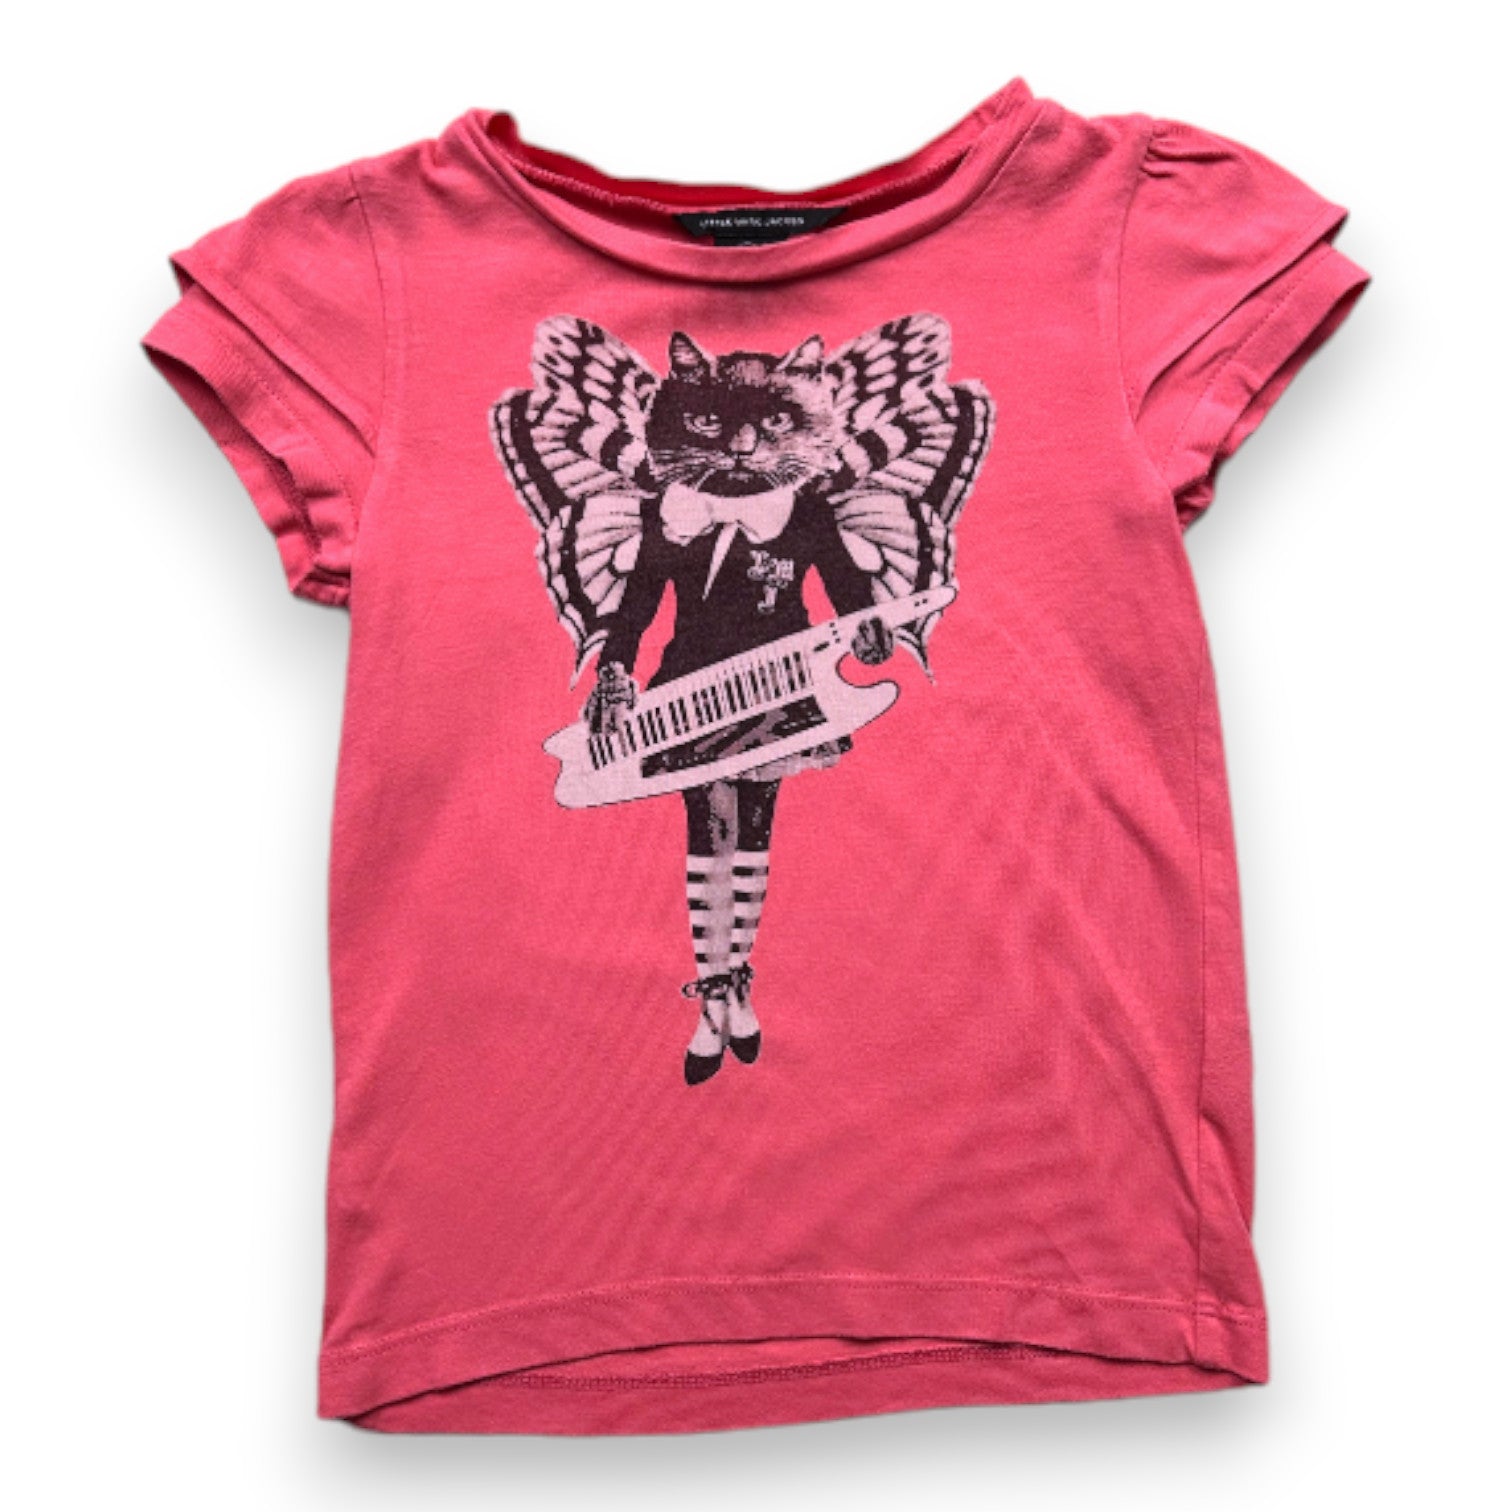 THE LITTLE MARC JACOBS - T-shirt rose avec imprimé - 6 ans